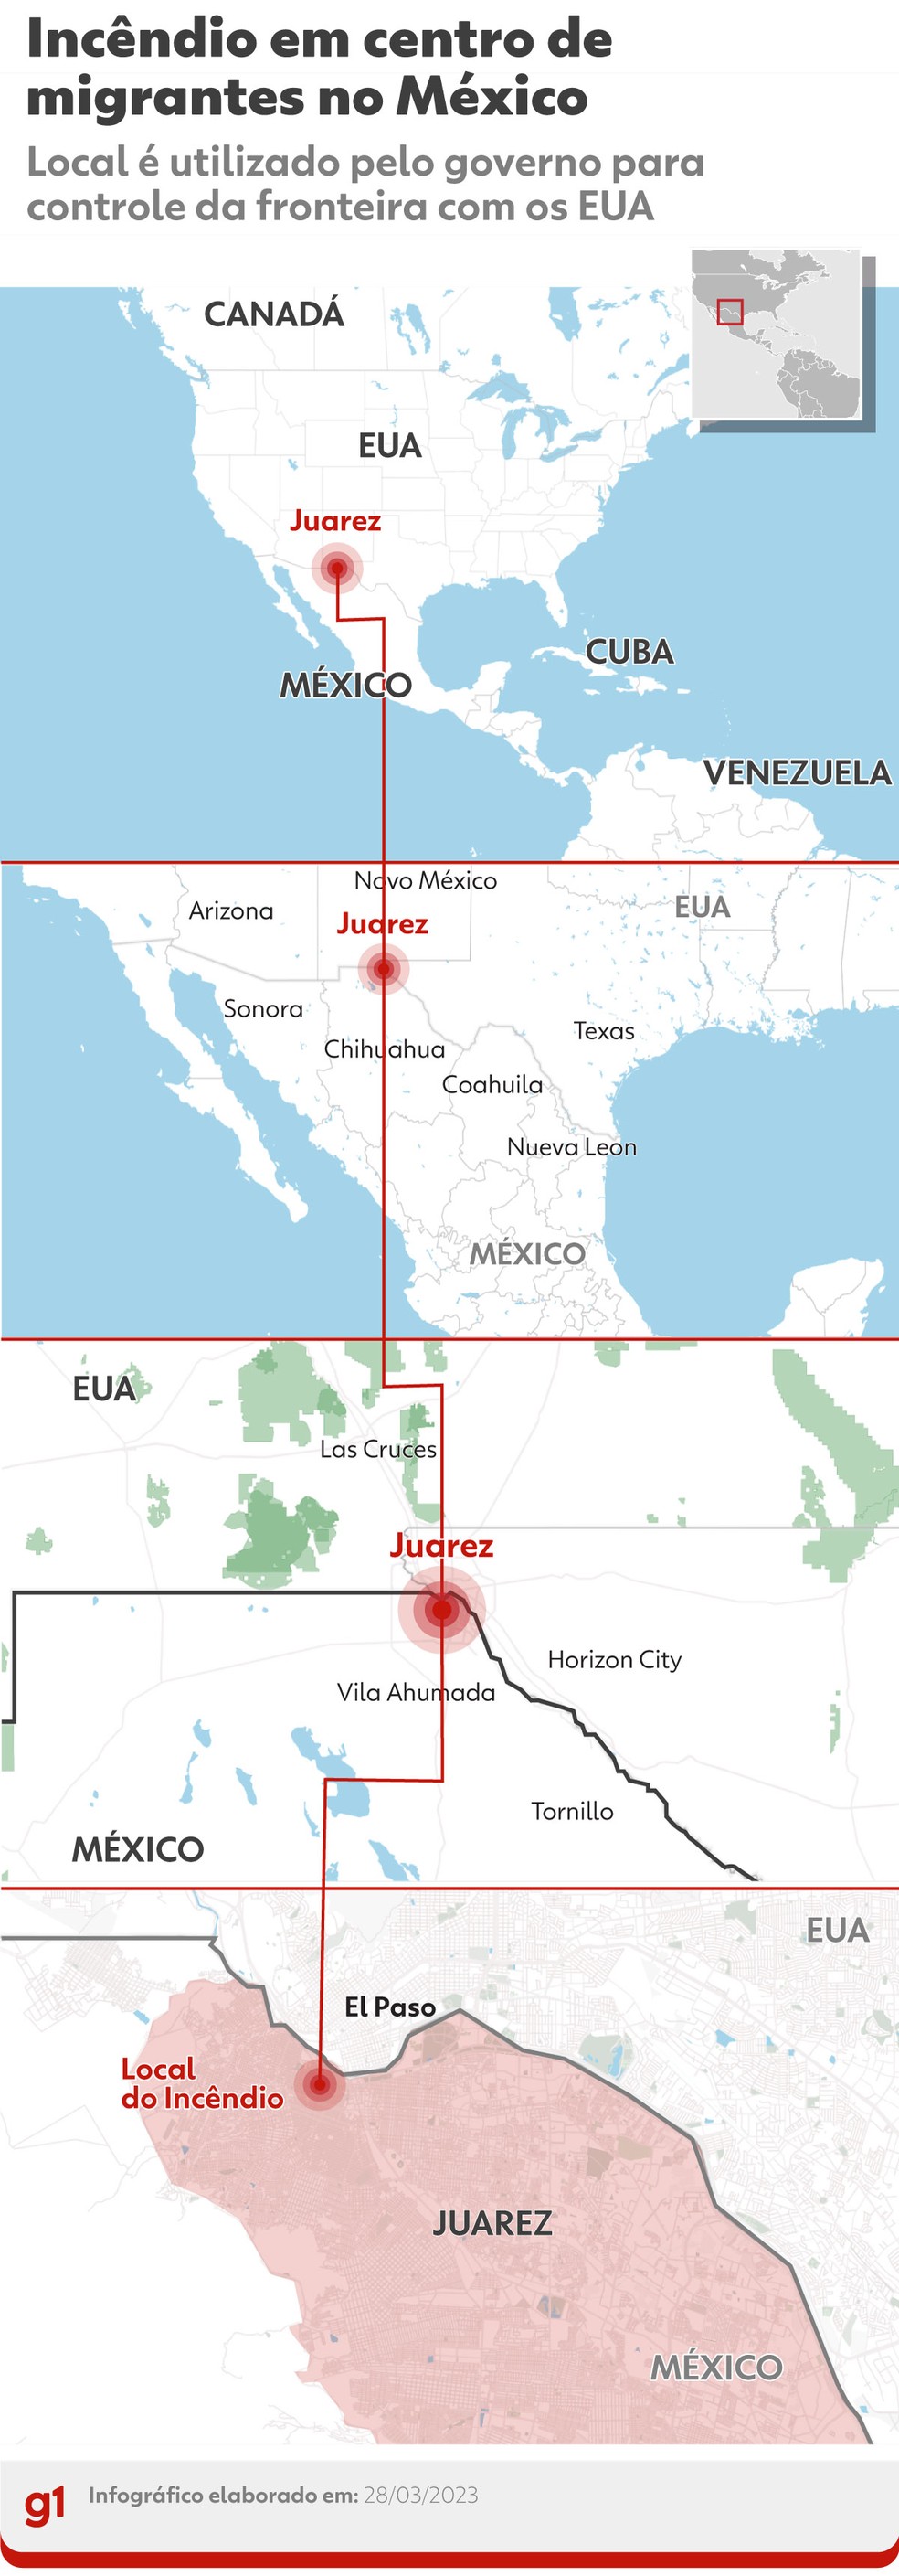 Mapa mostra a localização da cidade mexicana de Juarez, próxima à fronteira com os EUA — Foto: Arte g1